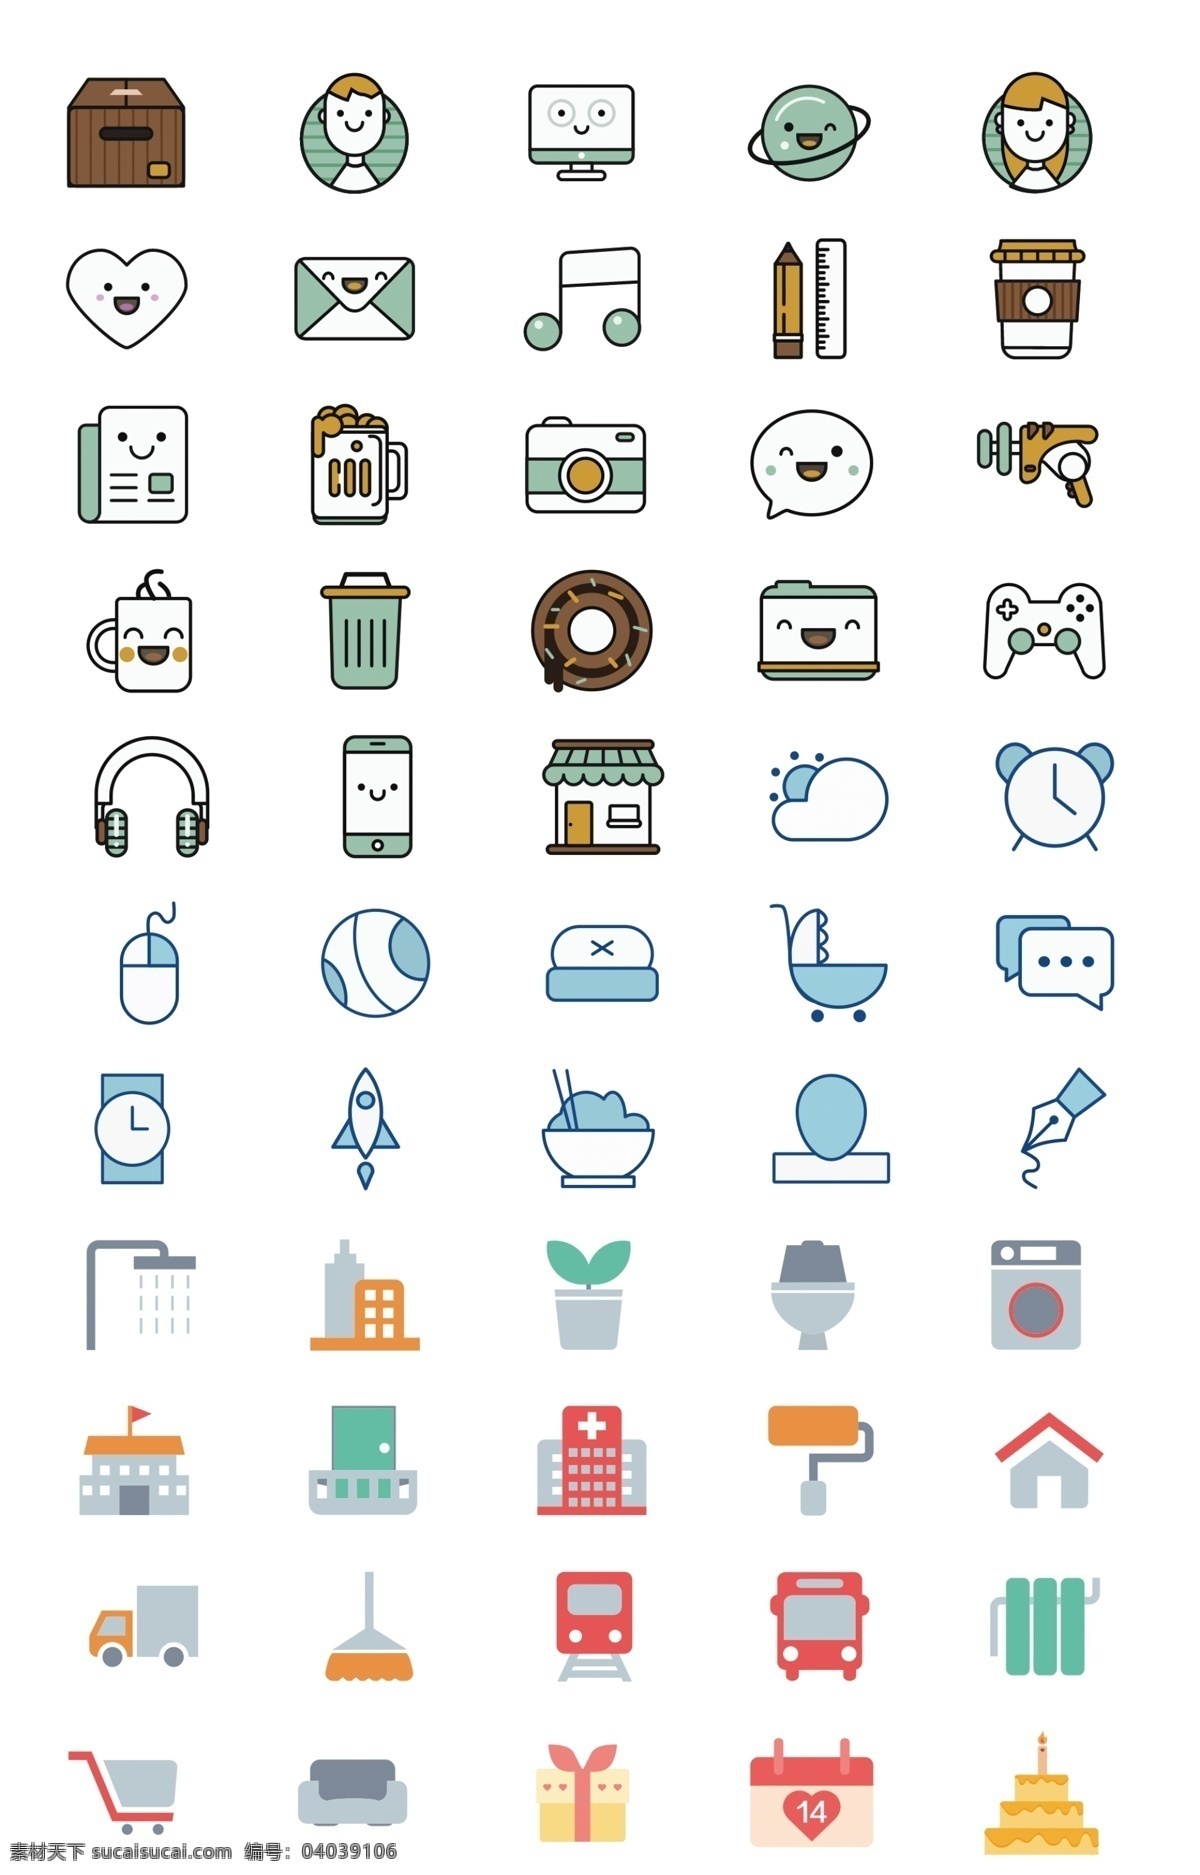 icon 图标 可爱 简单 游戏娱乐 房子 公共汽车 地铁 生日蛋糕 耳机 球 相机 商店 笔 手机 购物车 洗衣机